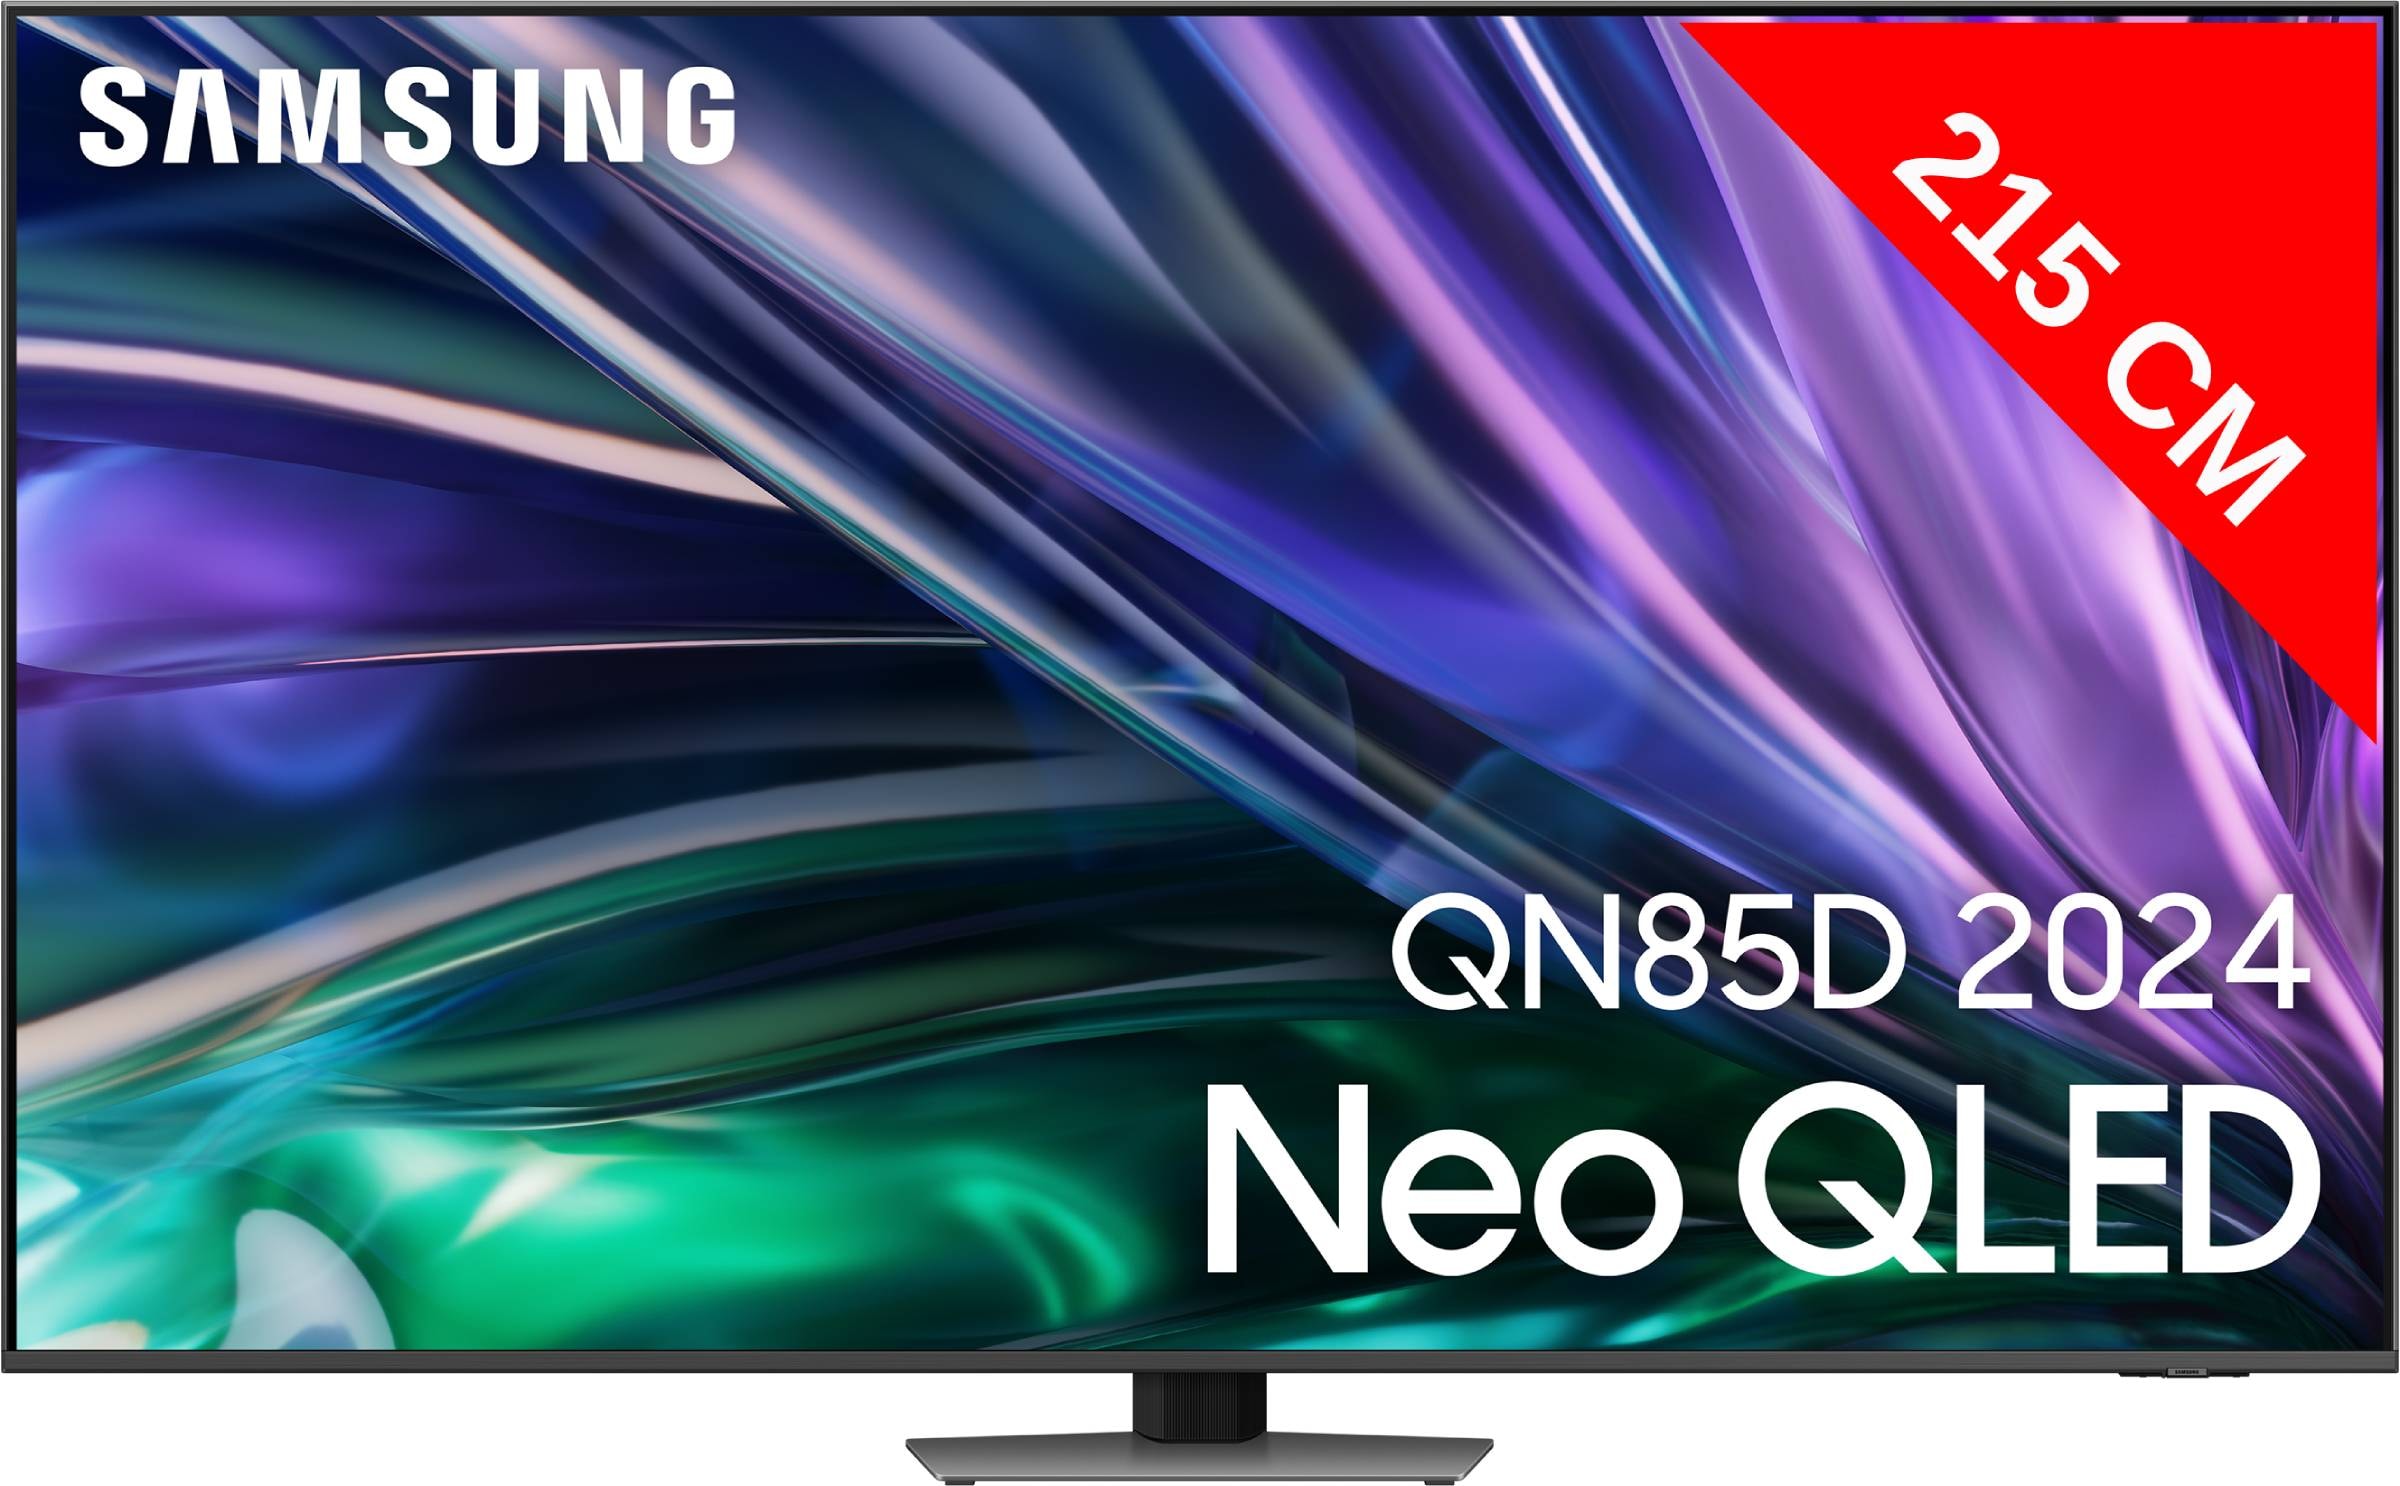 SAMSUNG TV Neo QLED 8K 214 cm Mini Led Ultra HD 85"  TQ85QN85D